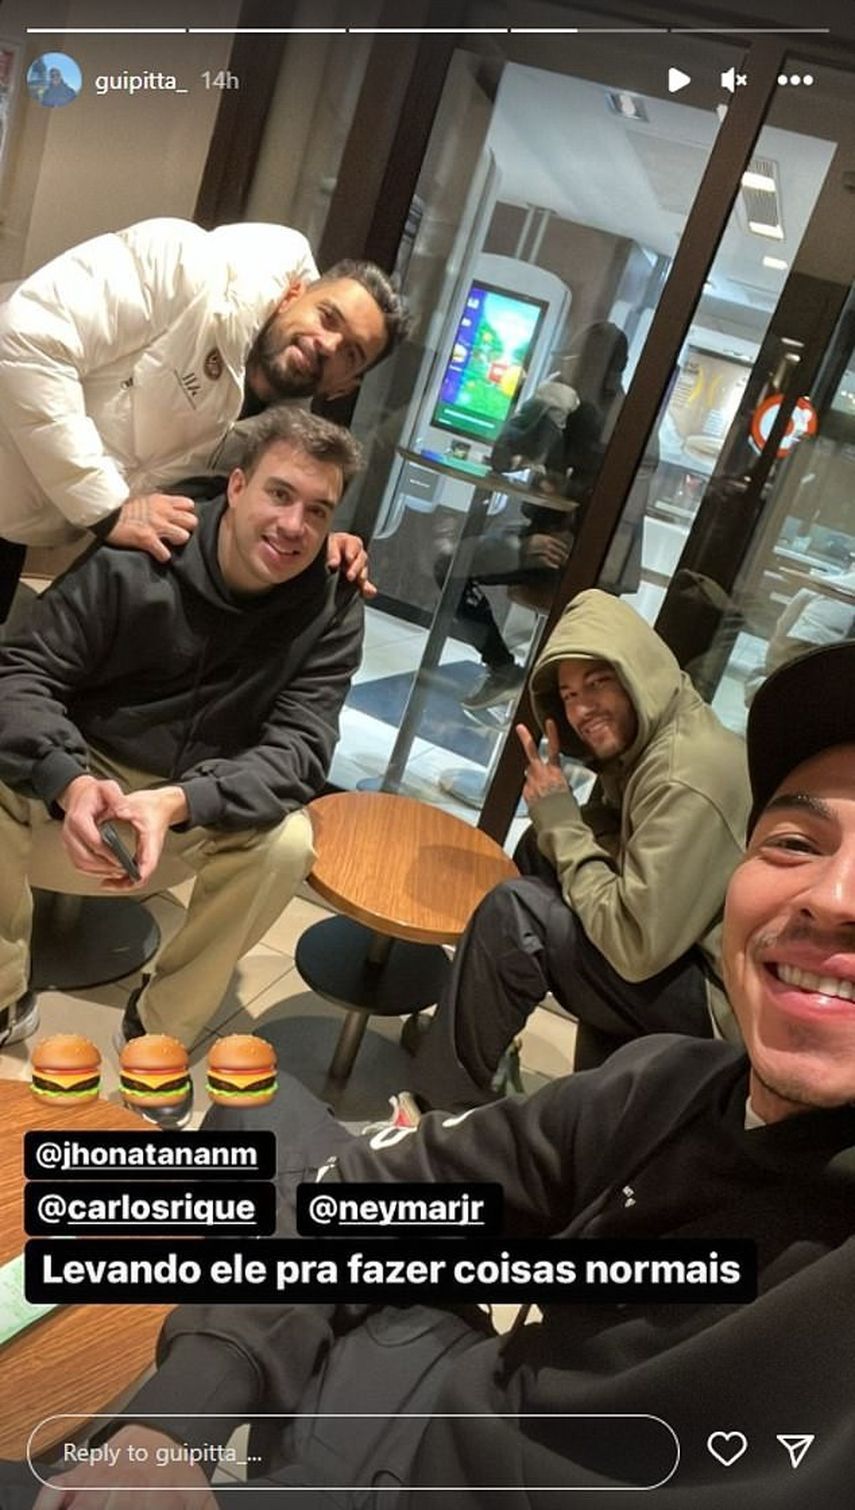 صورة نيمار رفقة أصدقائه في أحد مطاعم مكدونالدز في باريس 